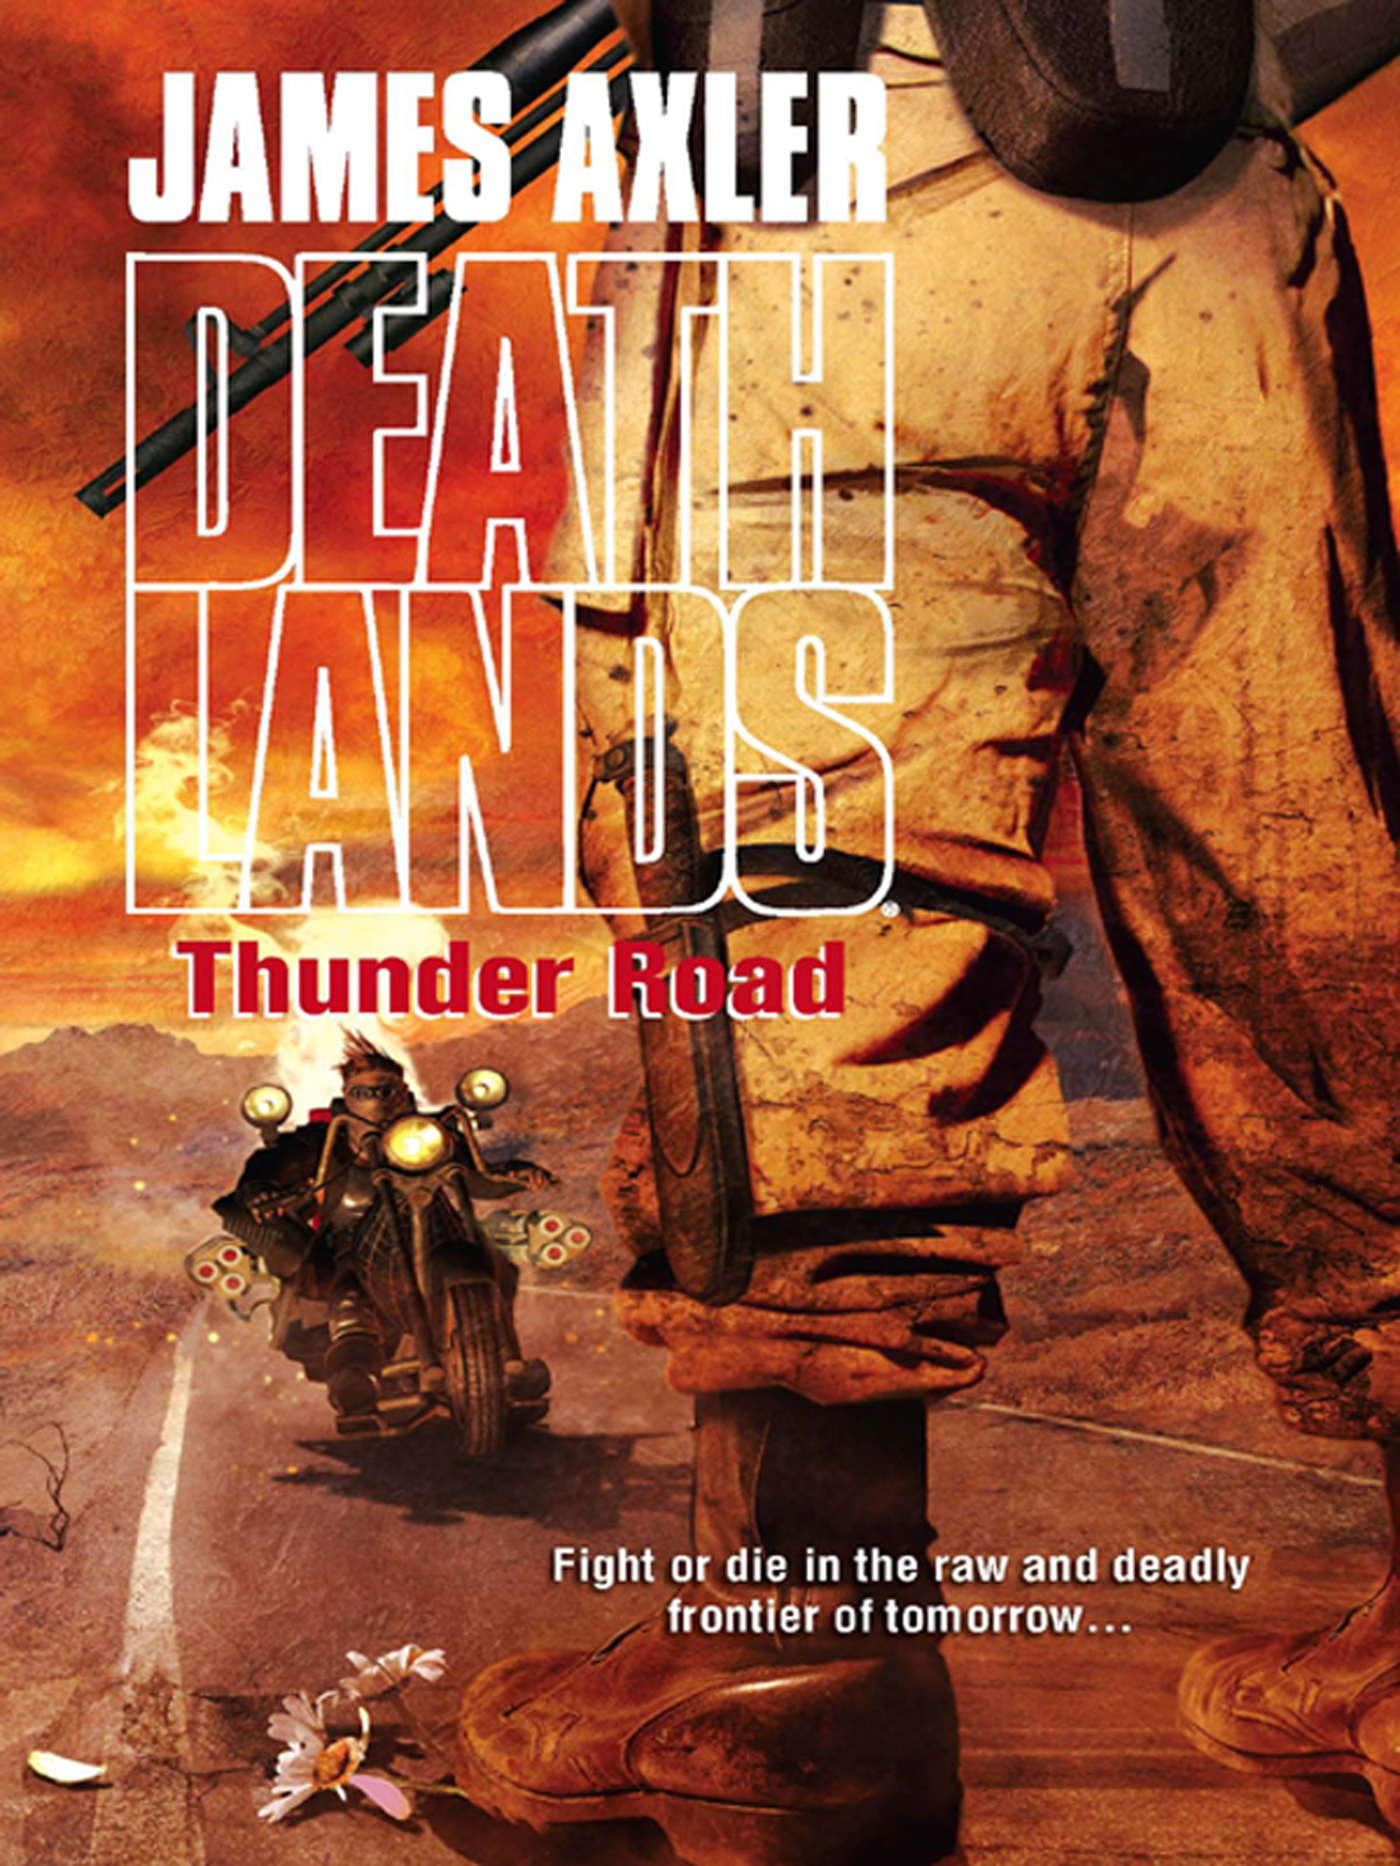 Thunder book. Thunder Road. Thunder Science Company. James road